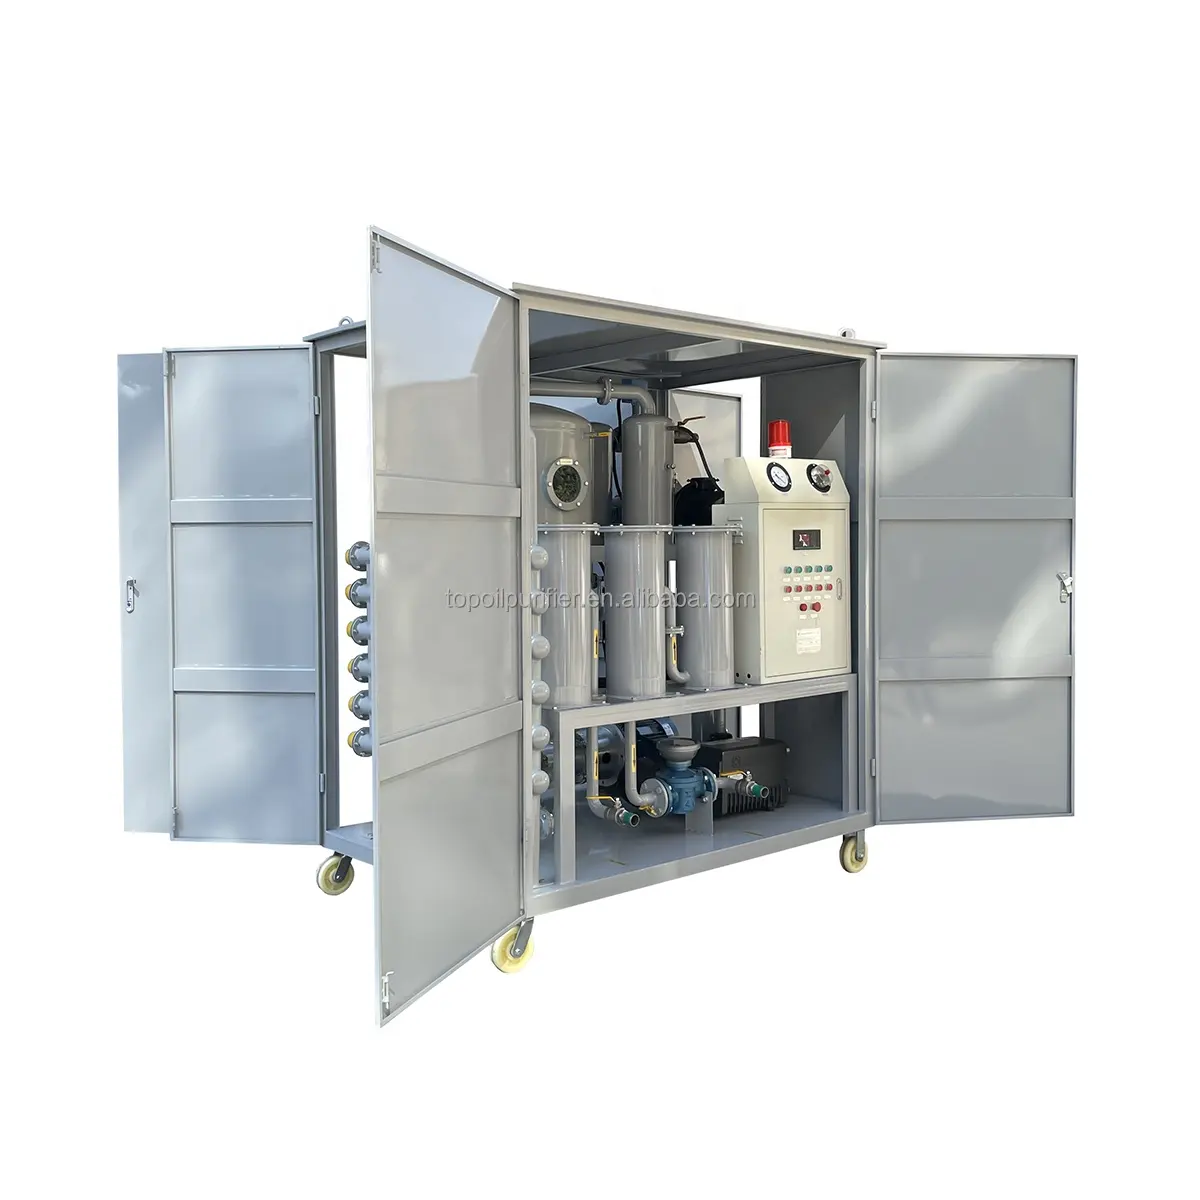 ZYD-W-150 serie ha utilizzato la macchina di filtrazione dell'olio del trasformatore, disidratare ed eliminare le impurità